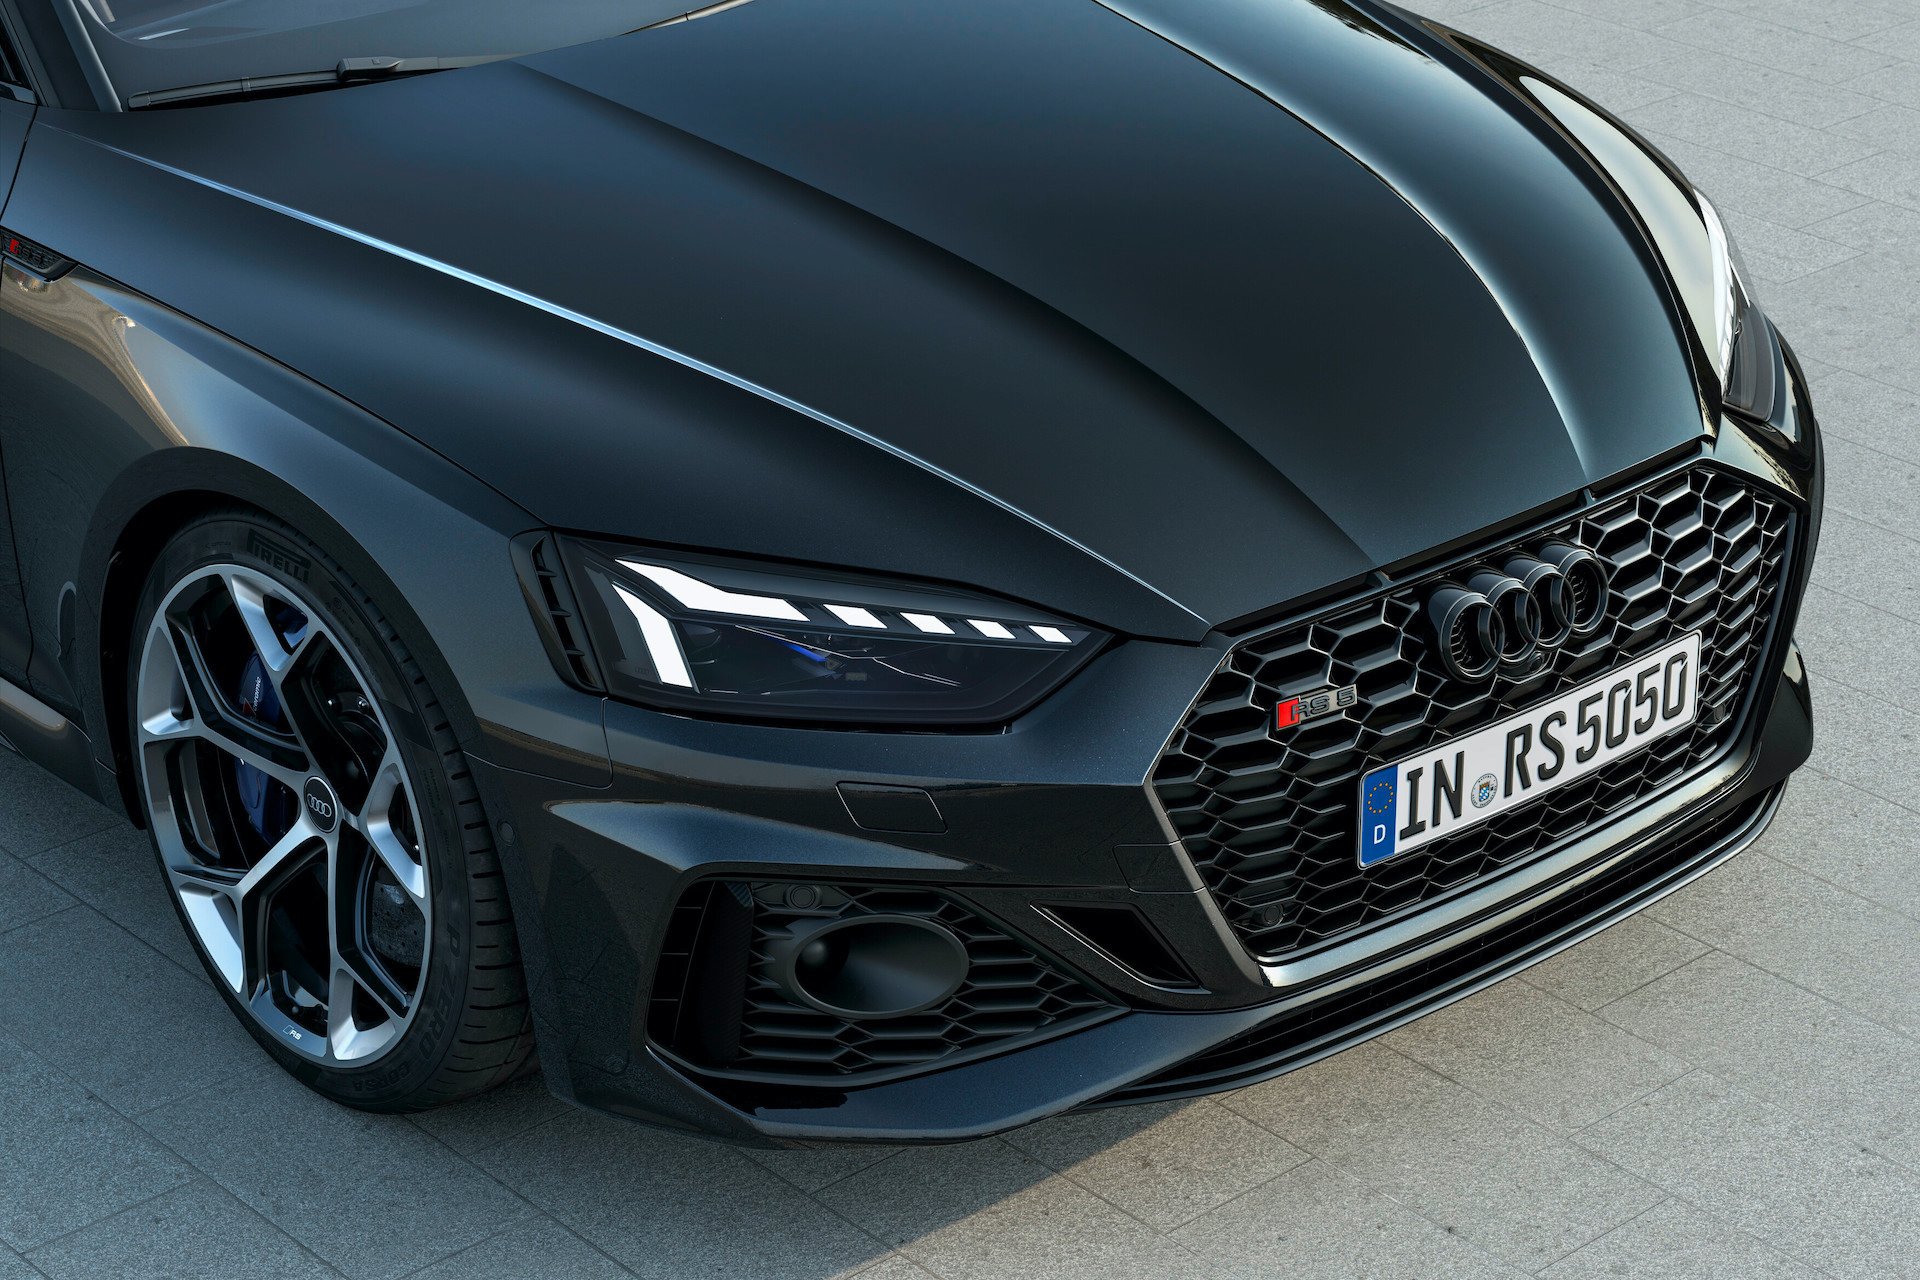 Audi RS 5 Sportback v črni sebring barvi s kristalnim učinkom